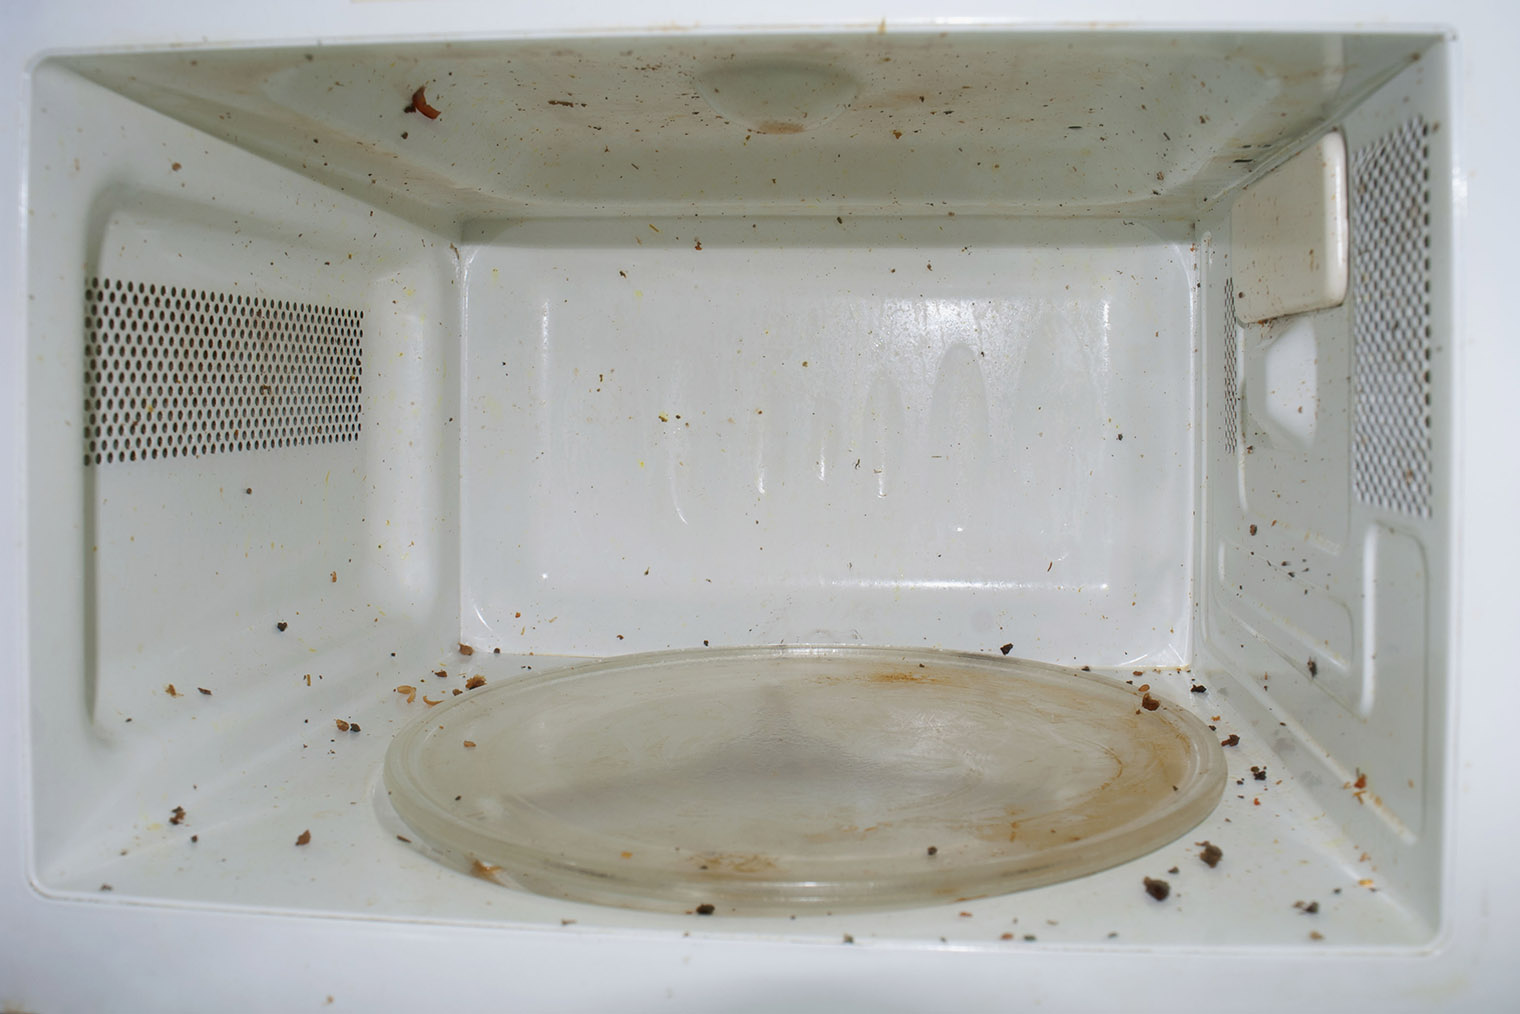 Задуматься об очистке нужно, даже если печь в таком состоянии — крупные куски еды могут загореться или забить вентиляционное отверстие. Фотография: Petcharee / Shutterstock / FOTODOM